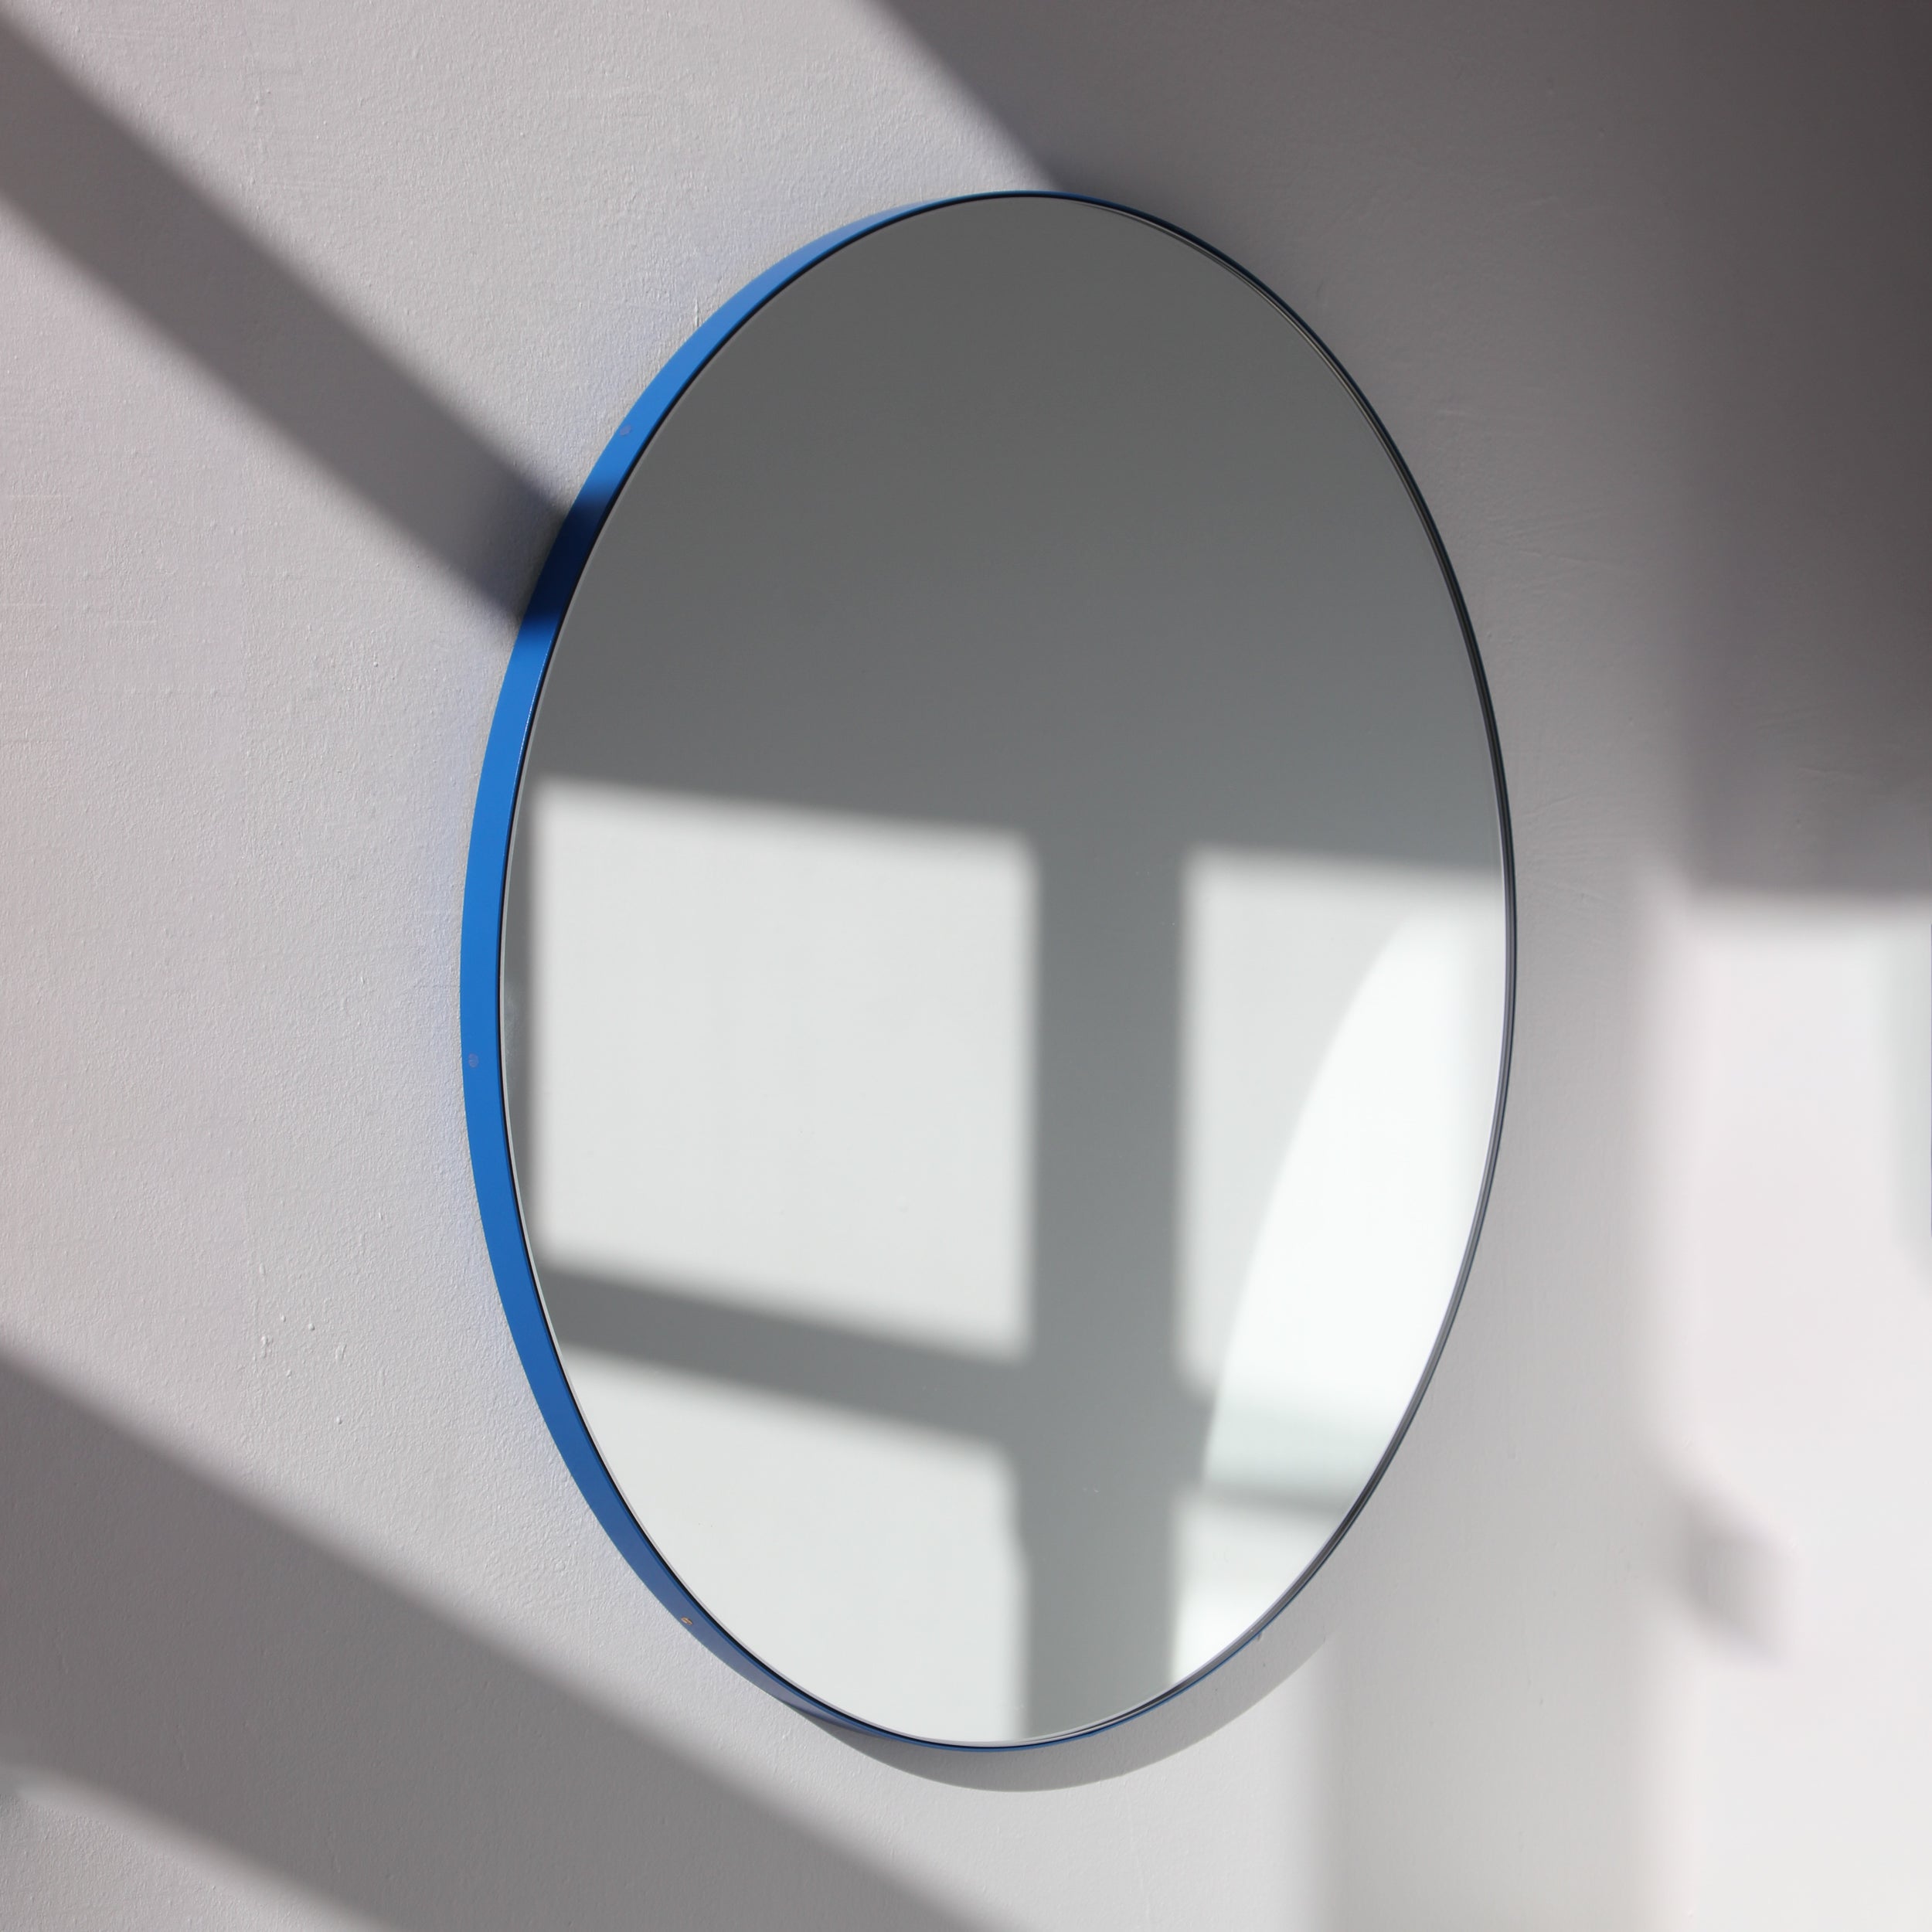 Orbis Runder Moderner Contemporary-Spiegel mit blauem Rahmen, klein